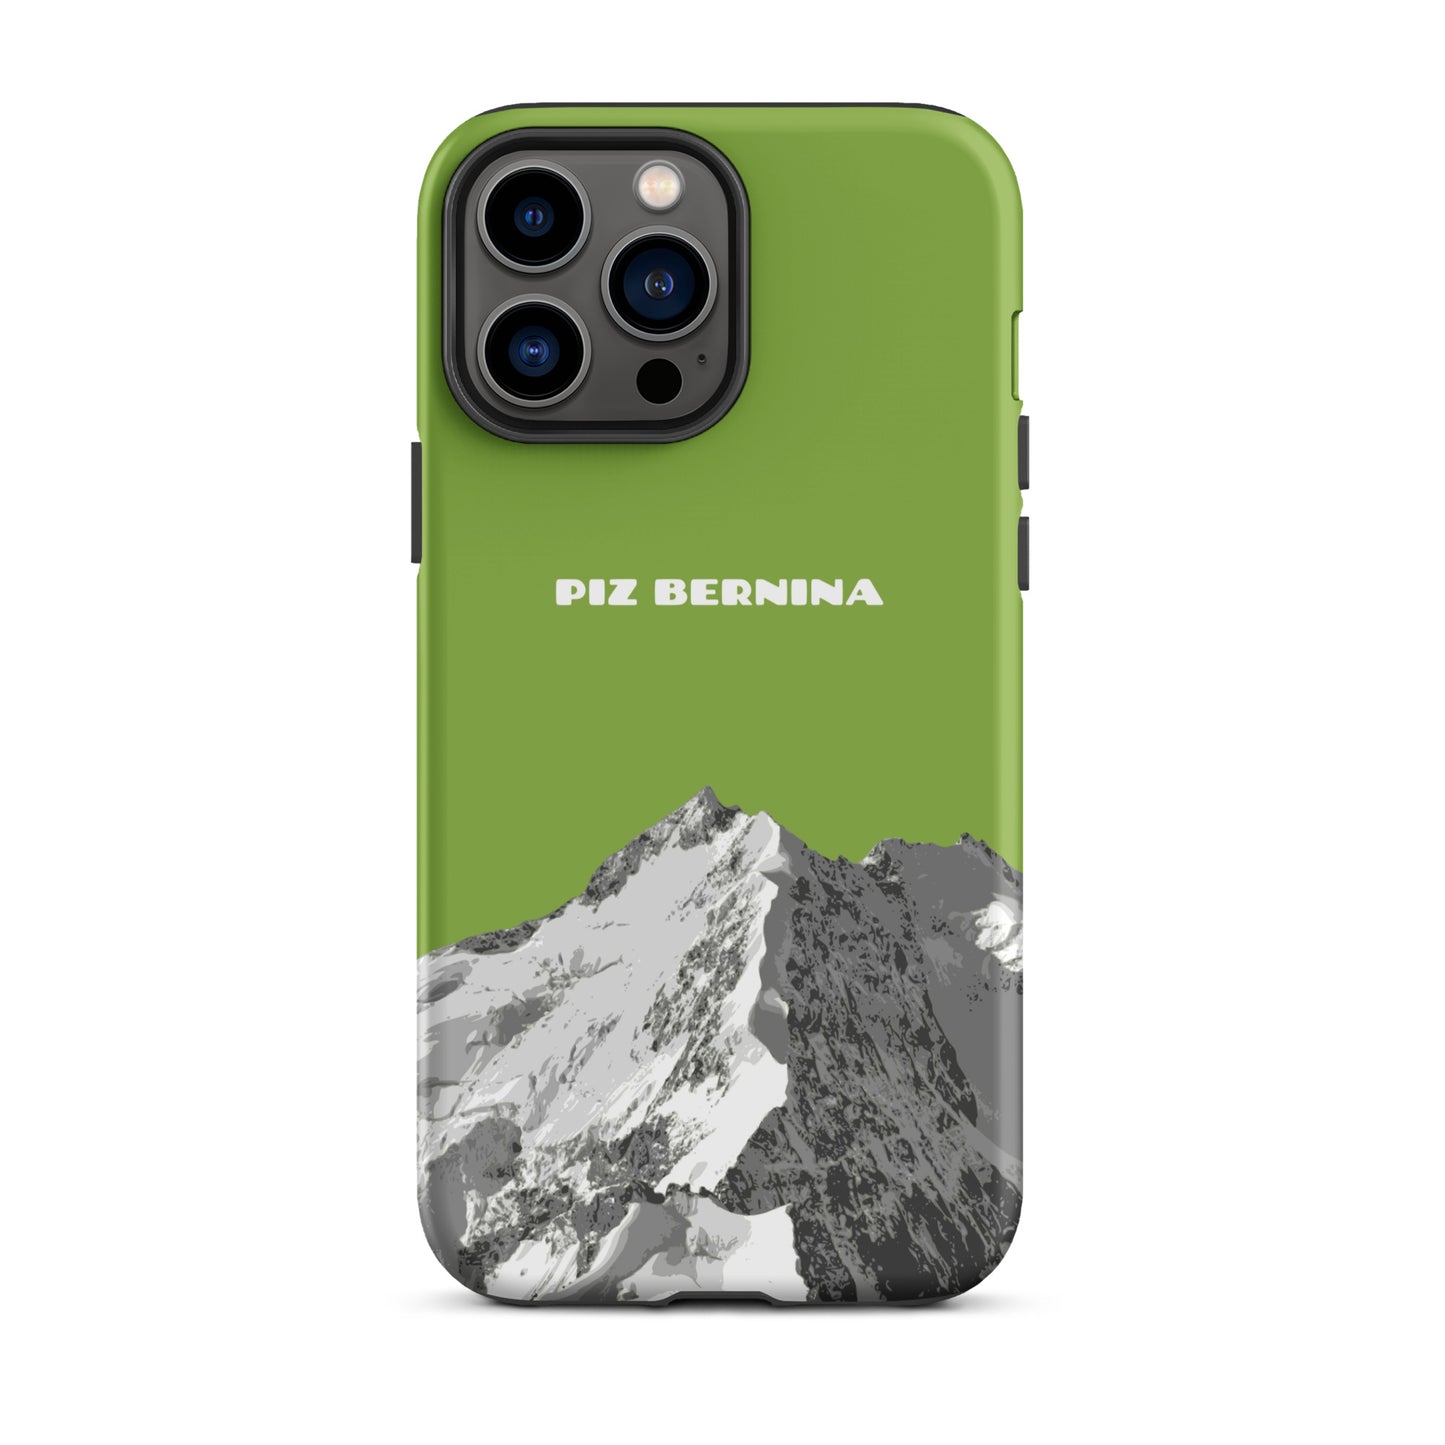 Hülle für das iPhone 13 Pro Max von Apple in der Farbe Gelbgrün, dass den Piz Bernina in Graubünden zeigt.